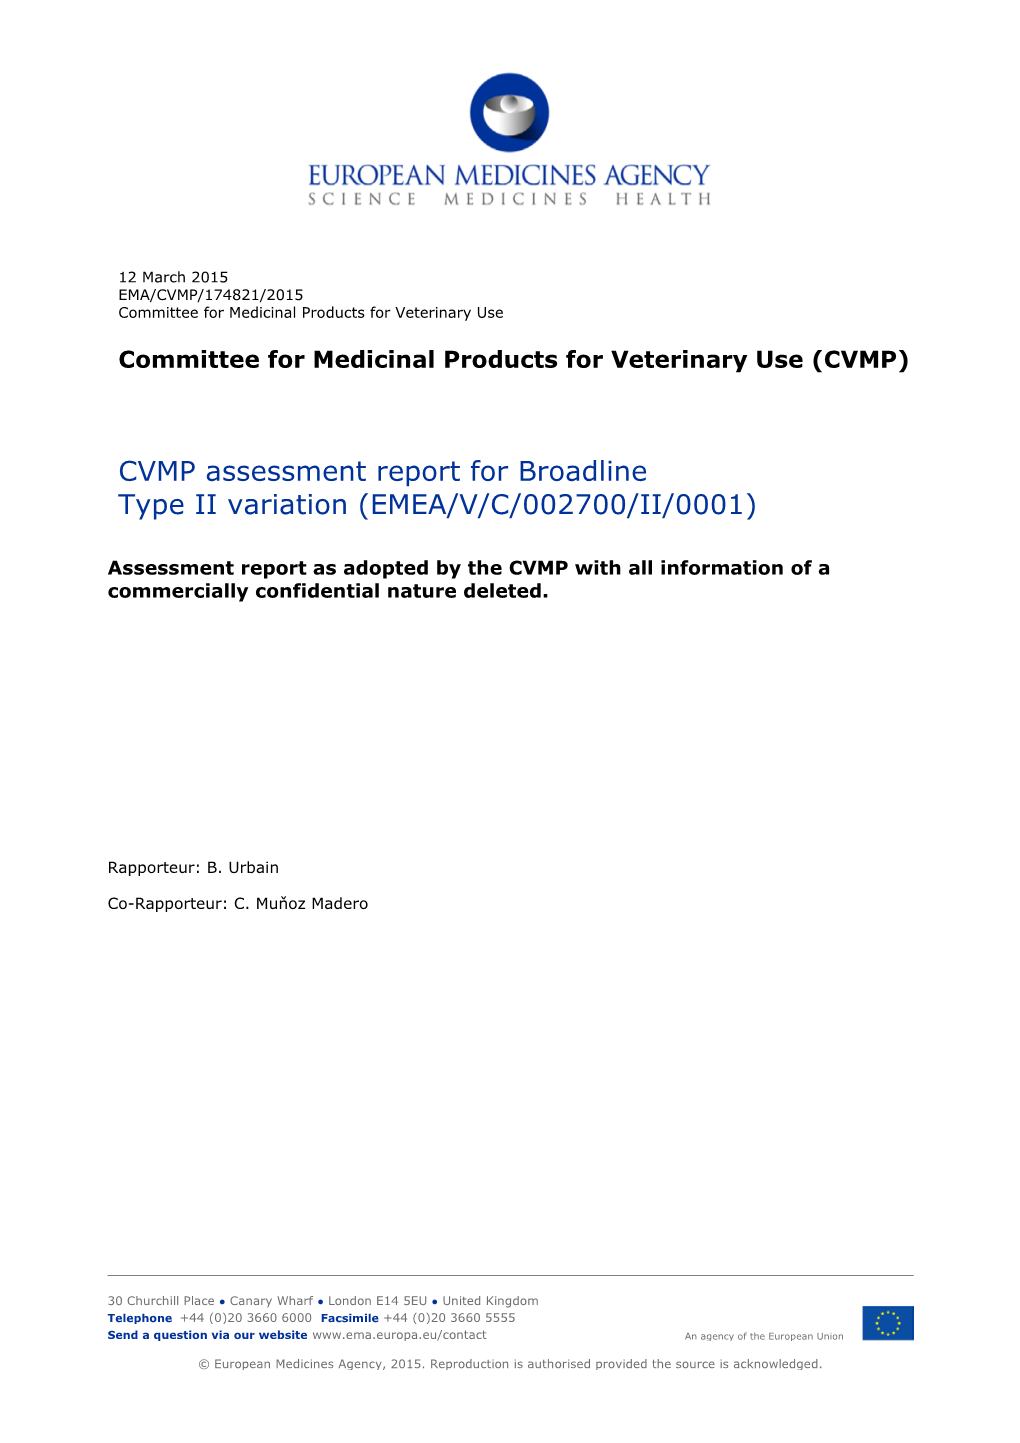 CVMP Assessment Report for Broadline Type II Variation (EMEA/V/C/002700/II/0001)